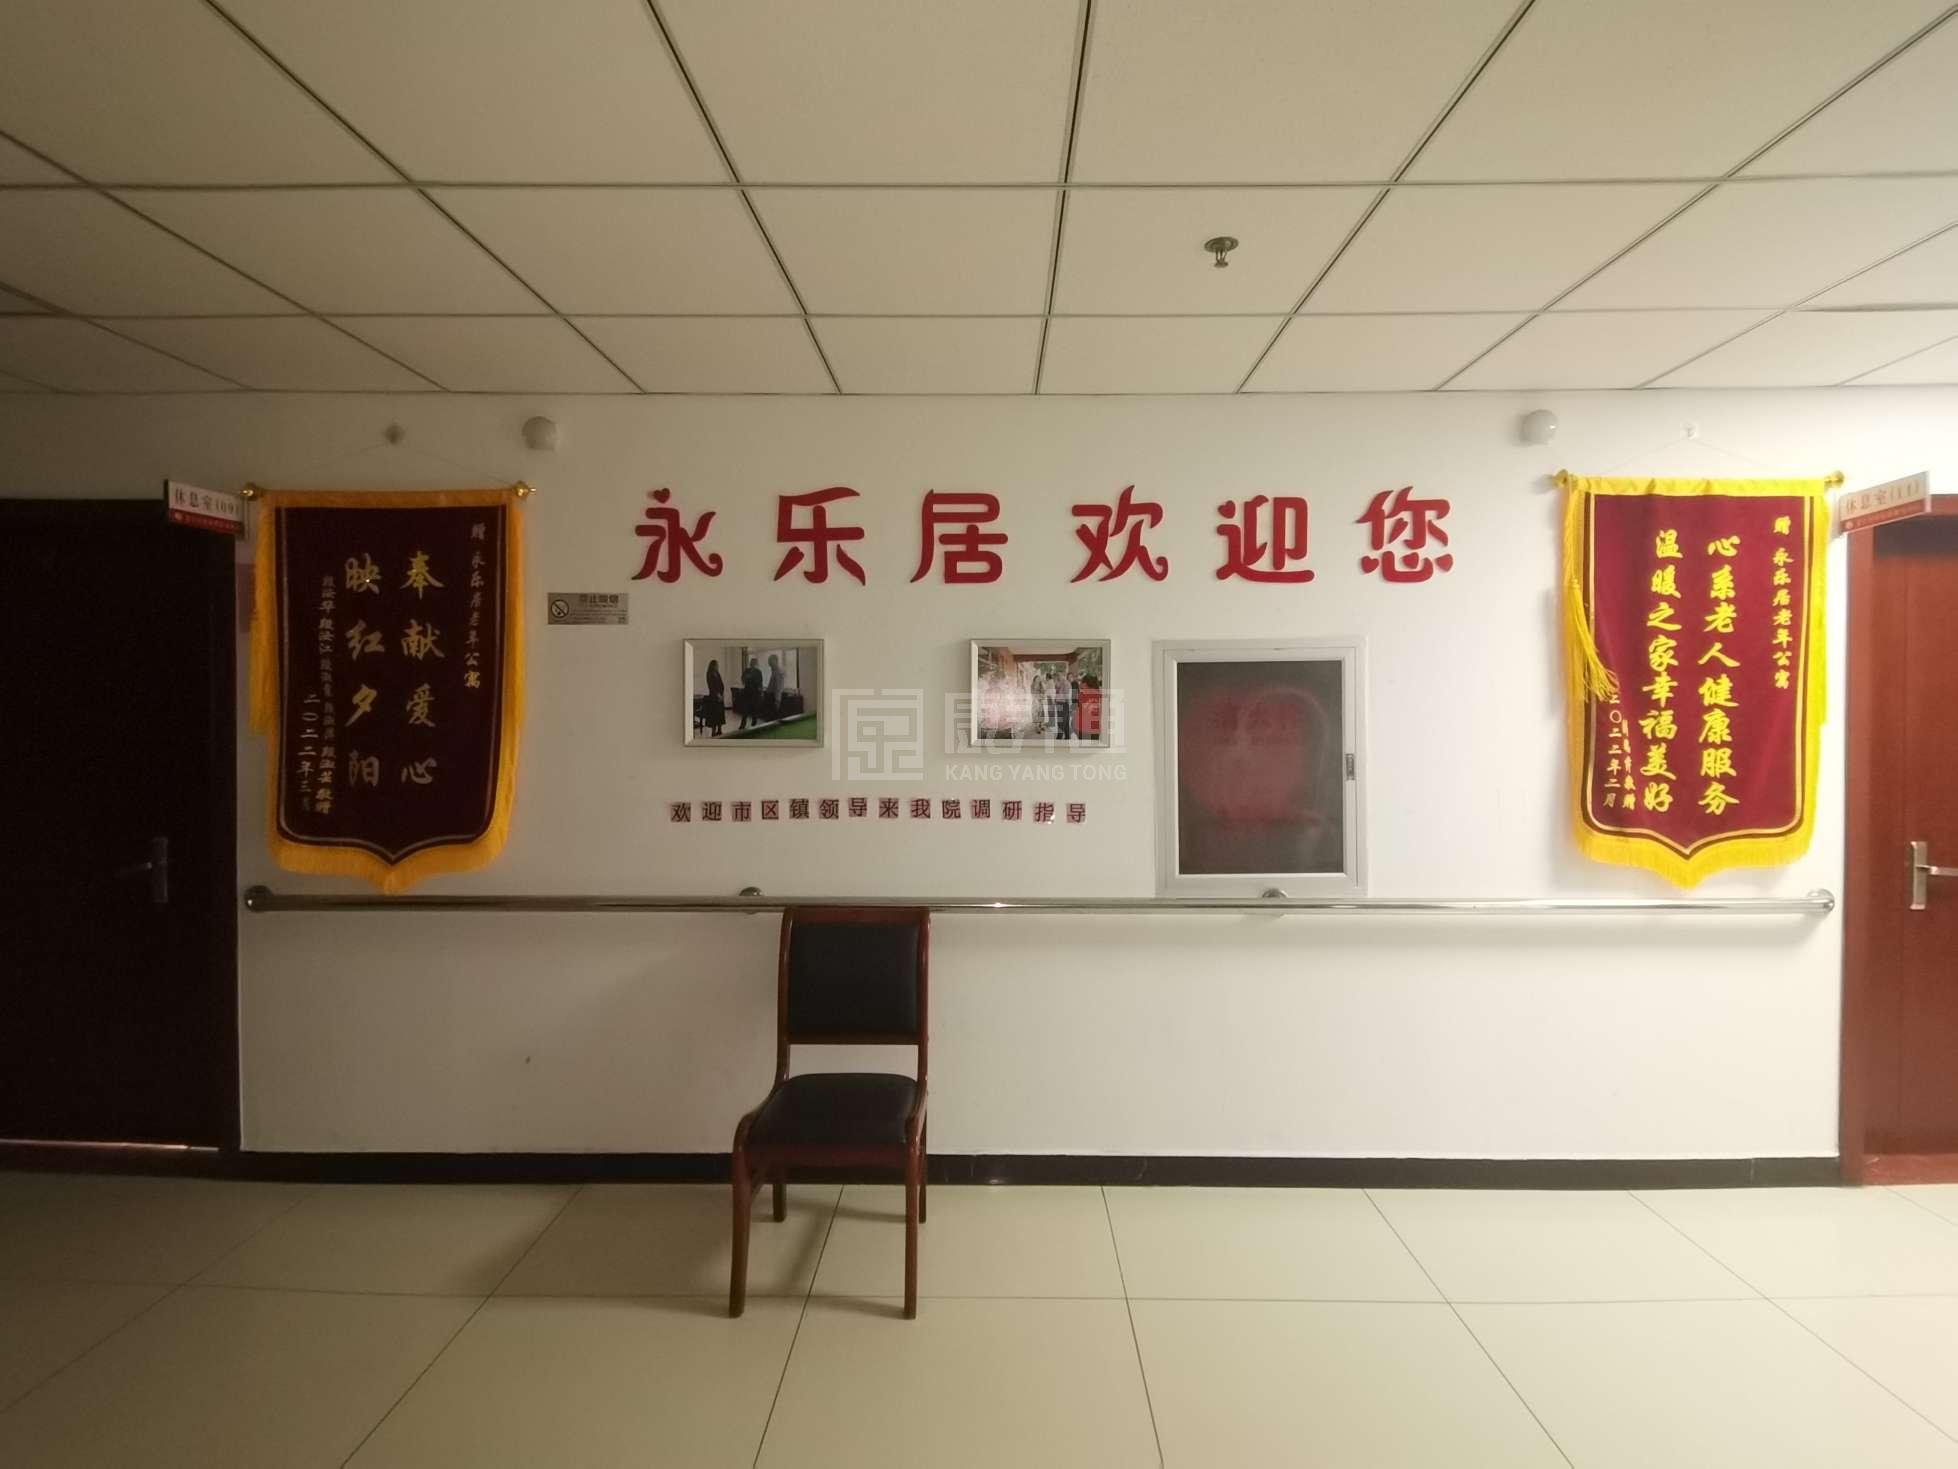 天津市蓟州区永乐居老年公寓服务项目图4让长者主动而自立地生活